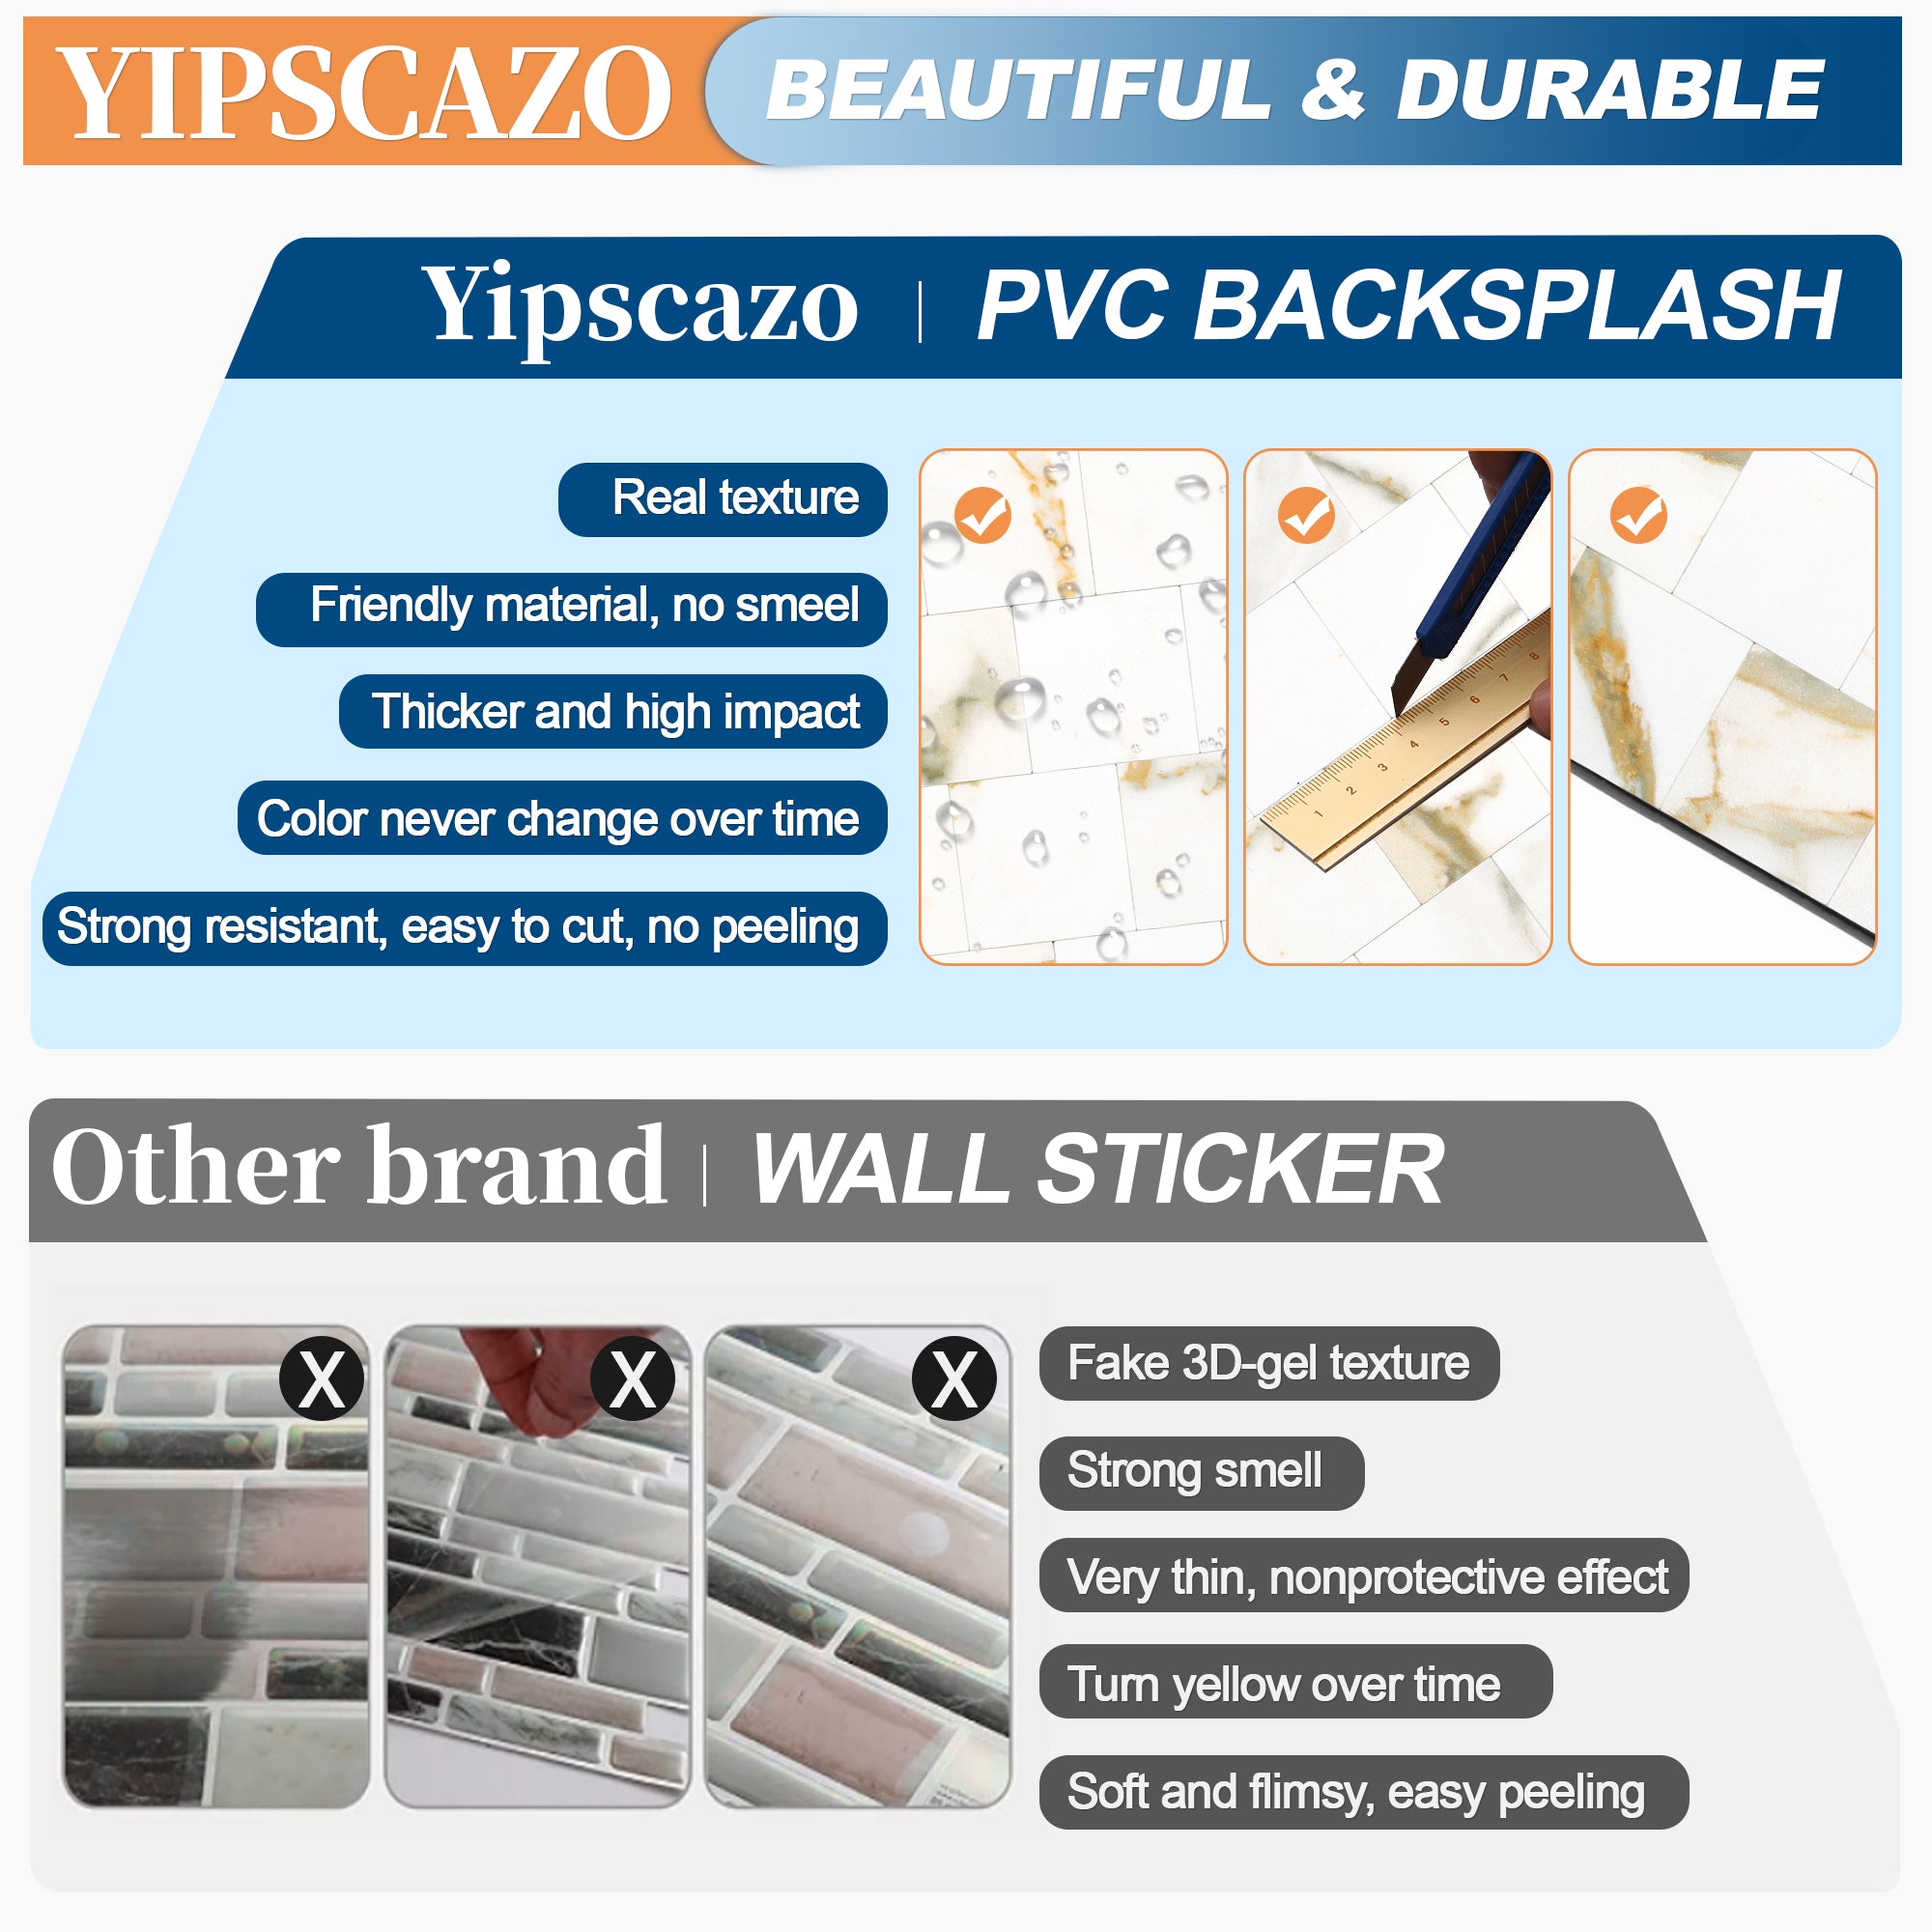 yipscazo pvc backsplash